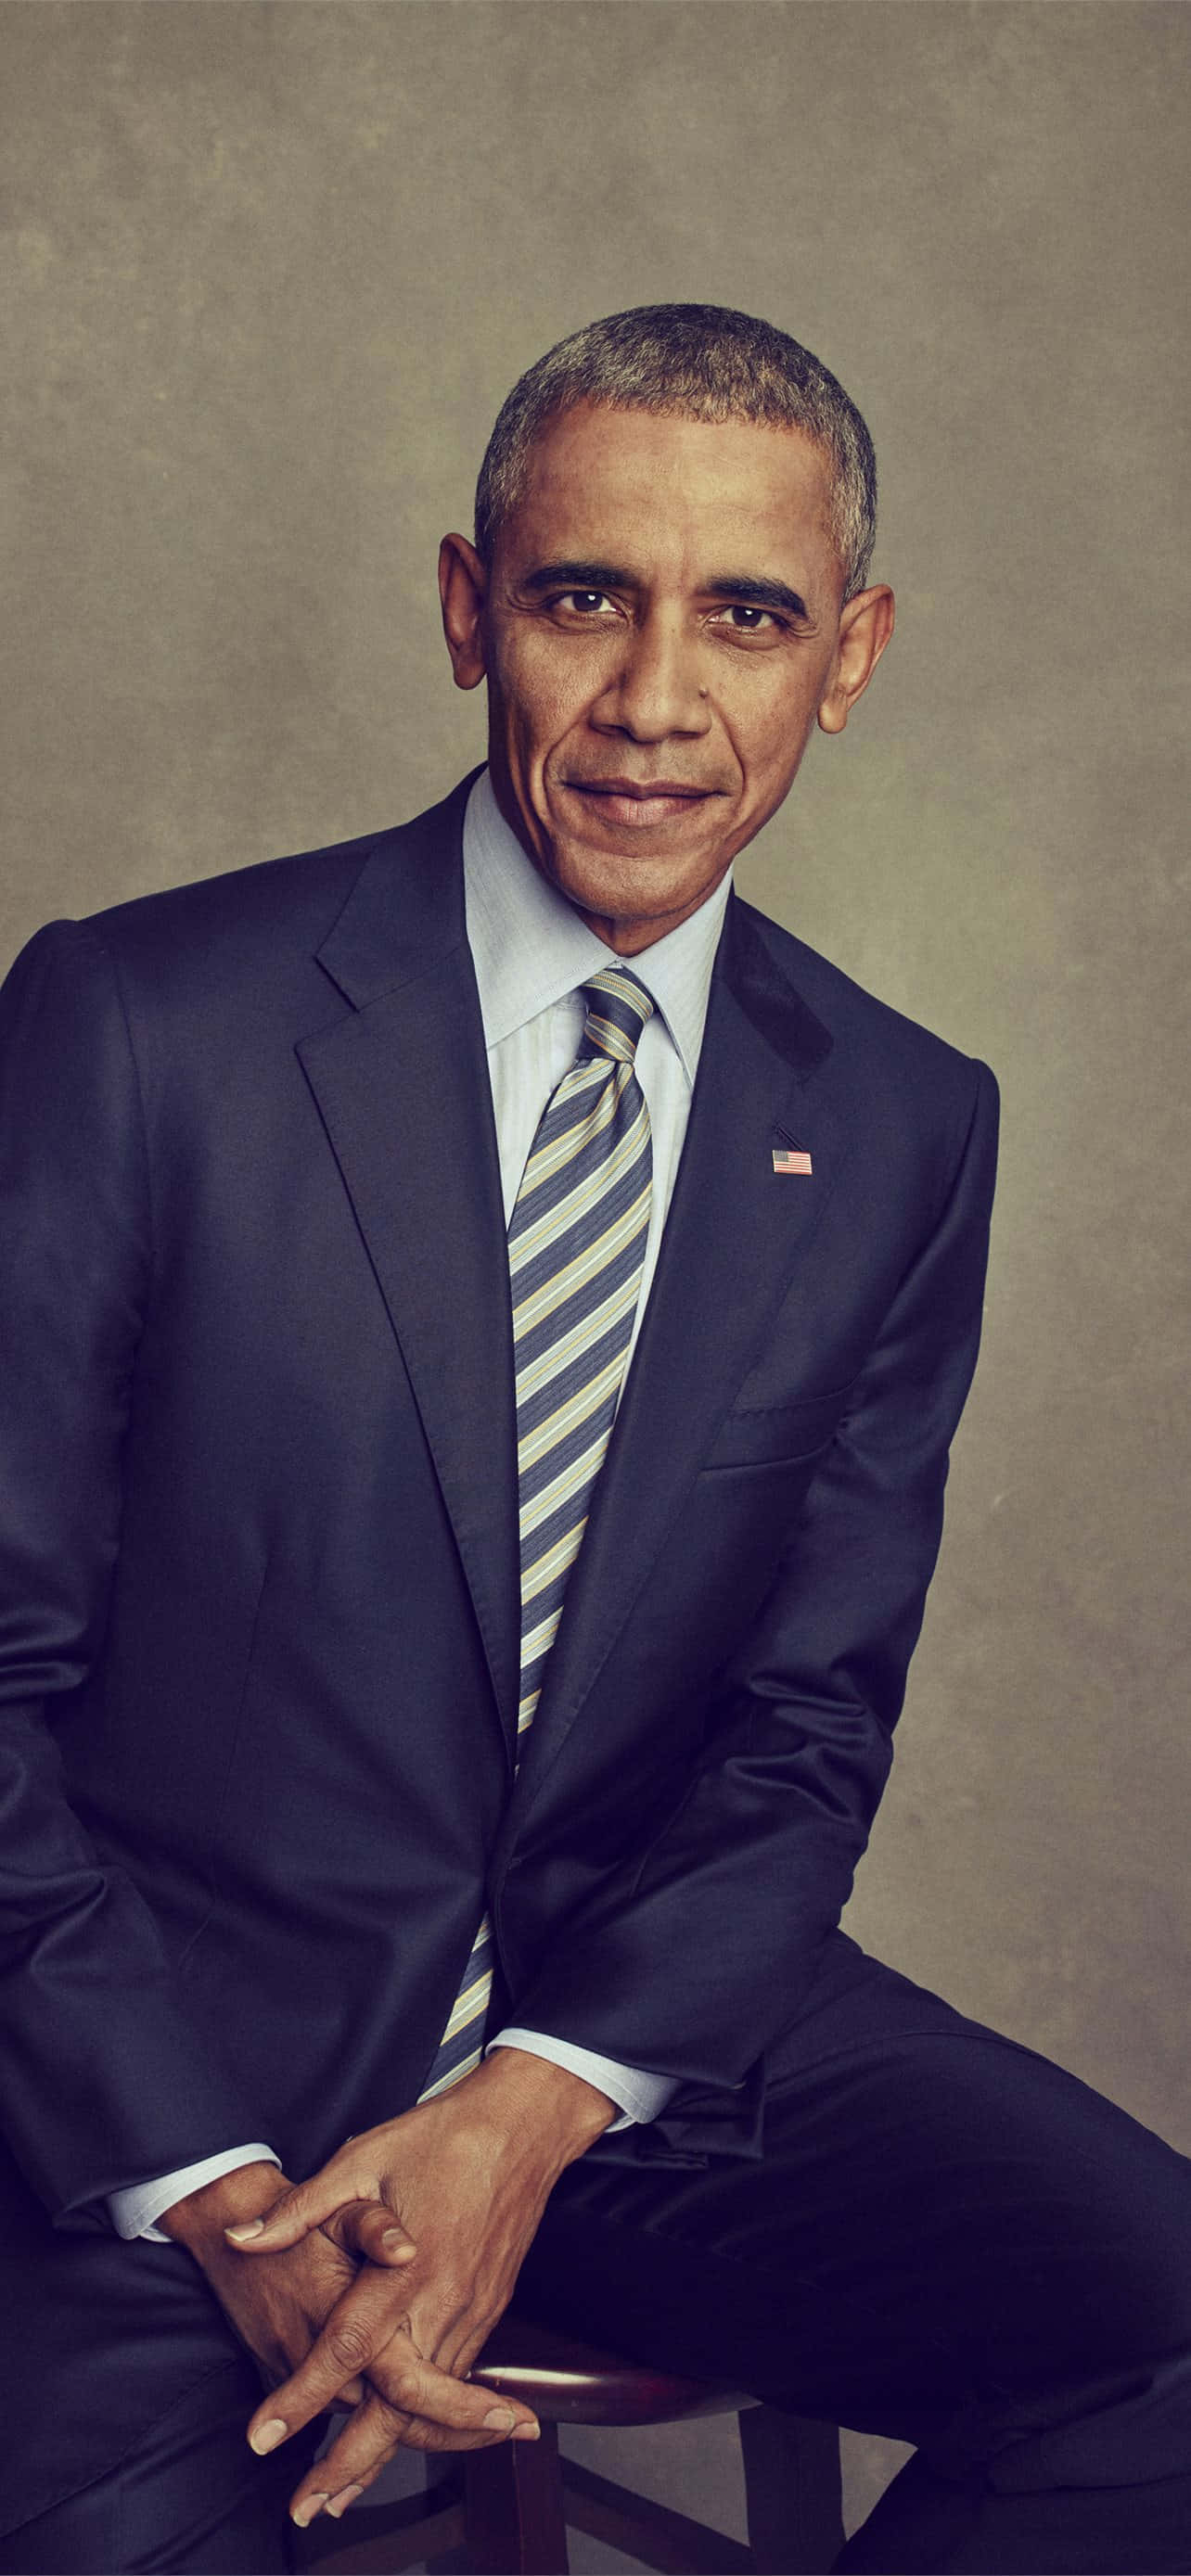 Derehemalige Präsident Barack Obama Lächelt Während Einer Veranstaltung.